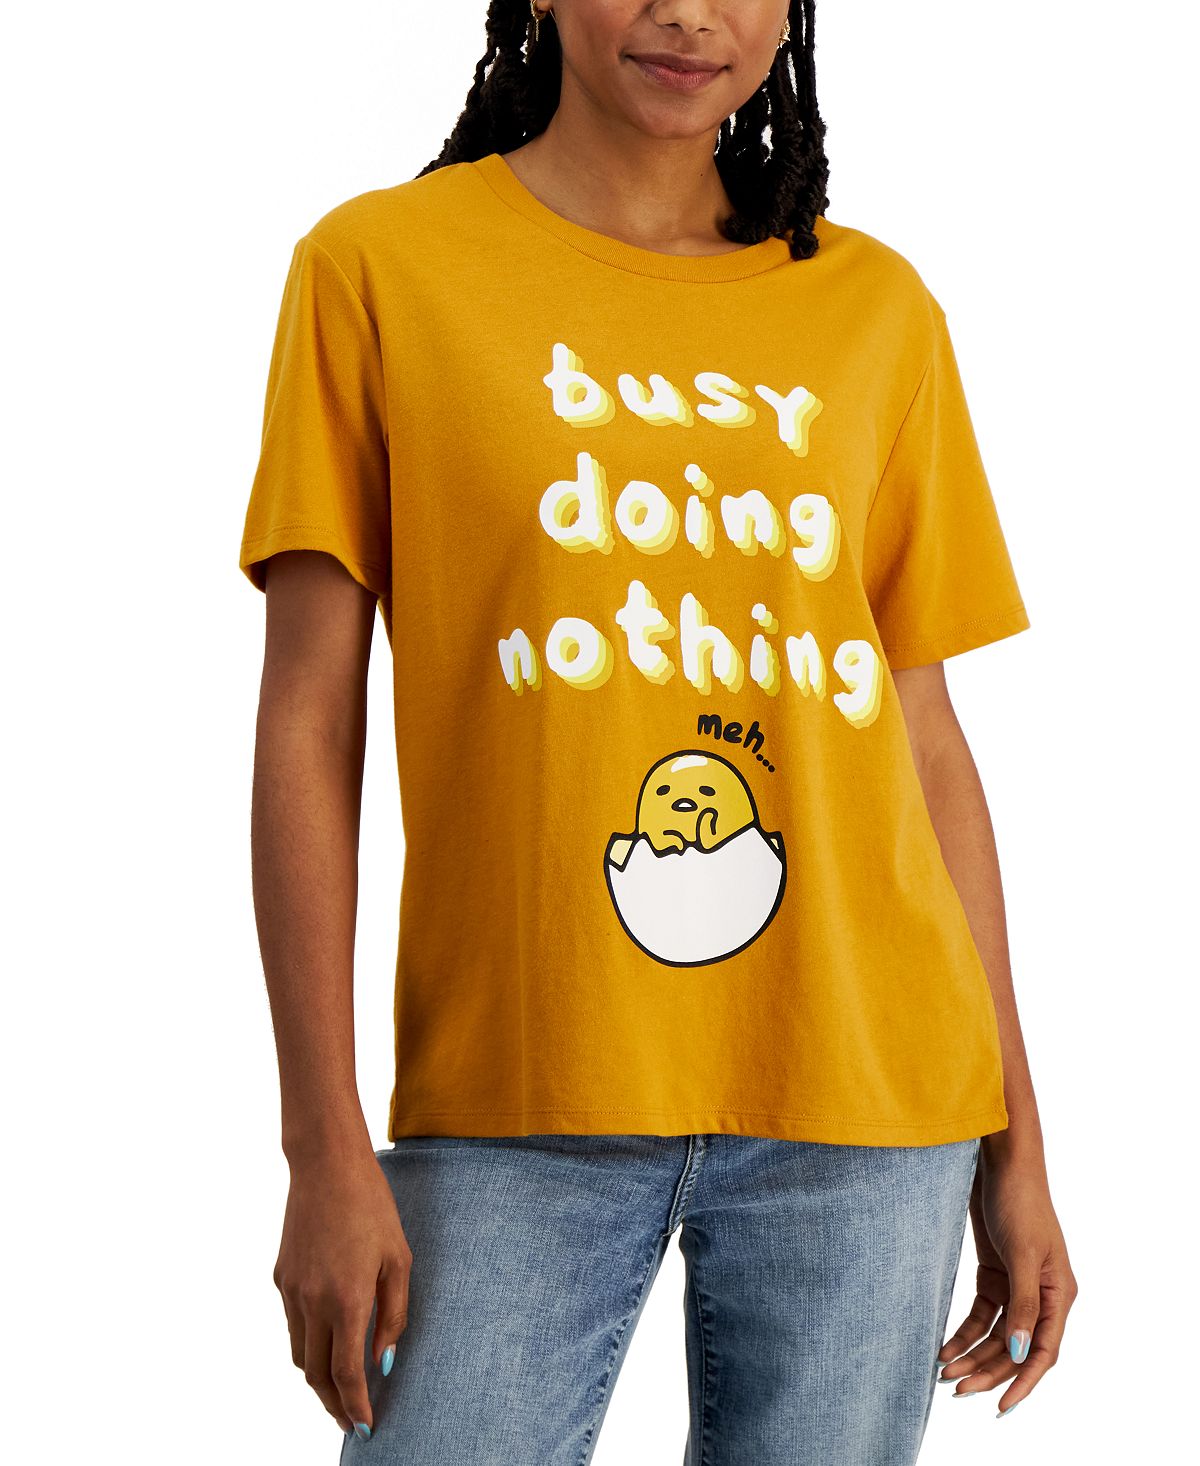 Футболка gudetama busy doing nothing для юниоров Love Tribe футболка женская с буквенным принтом модный винтажный топ в эстетике повседневная рубашка с круглым вырезом с графическим принтом на лет